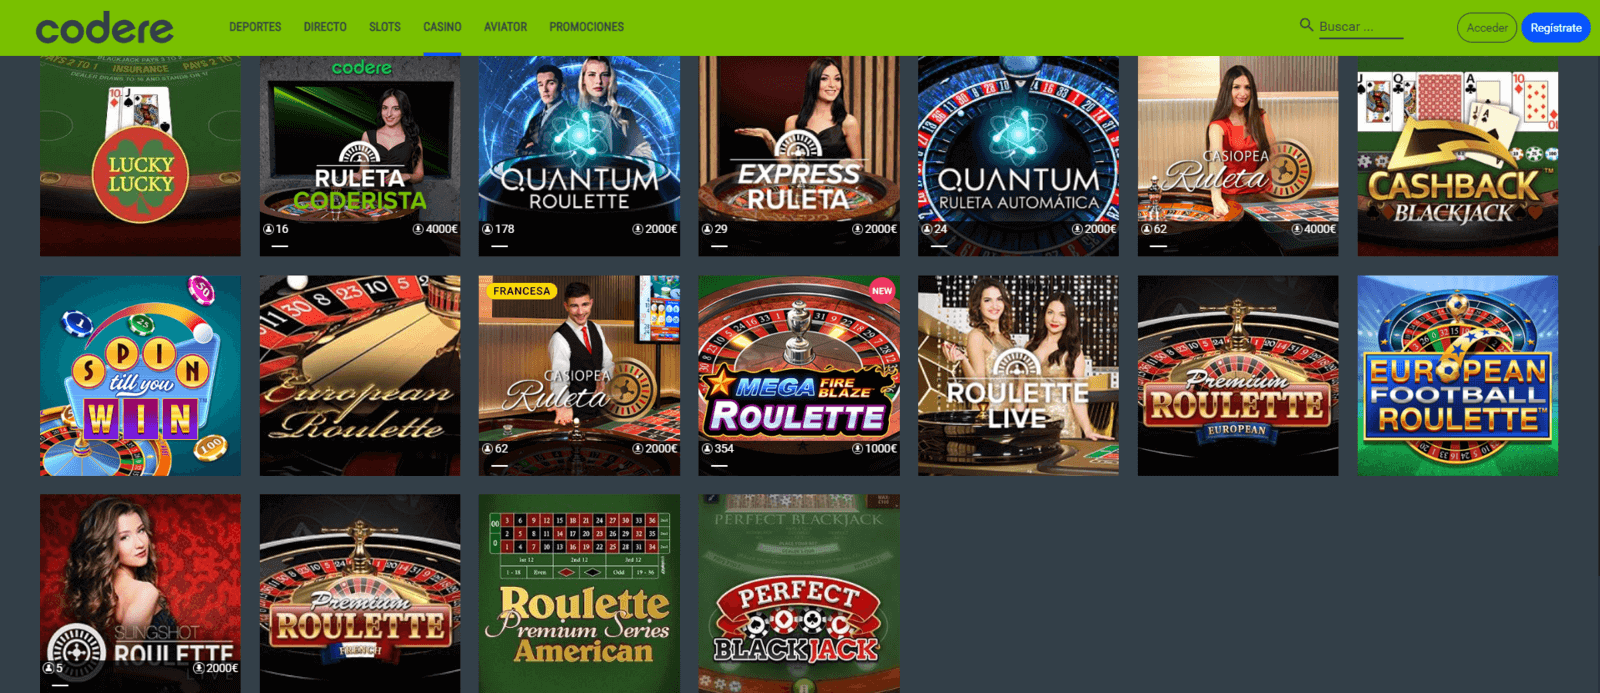 Juegos de Codere Casino online de España